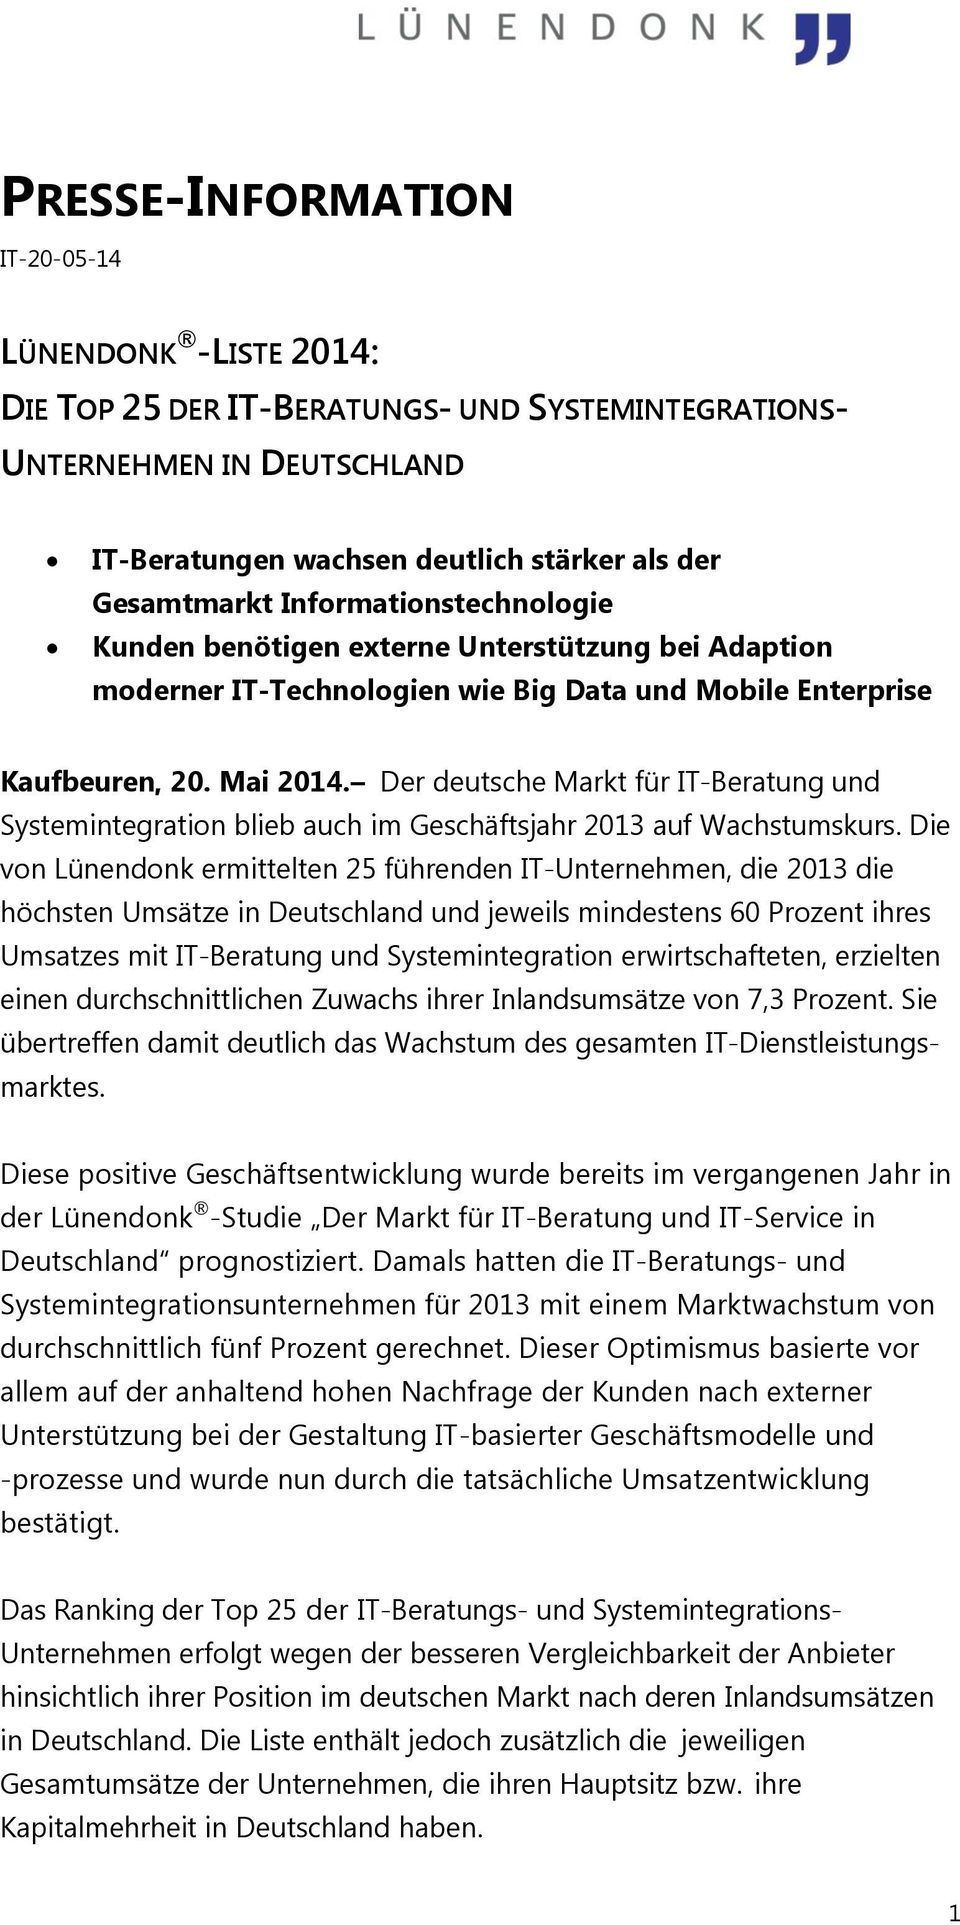 Der deutsche Markt für IT-Beratung und Systemintegration blieb auch im Geschäftsjahr 2013 auf Wachstumskurs.